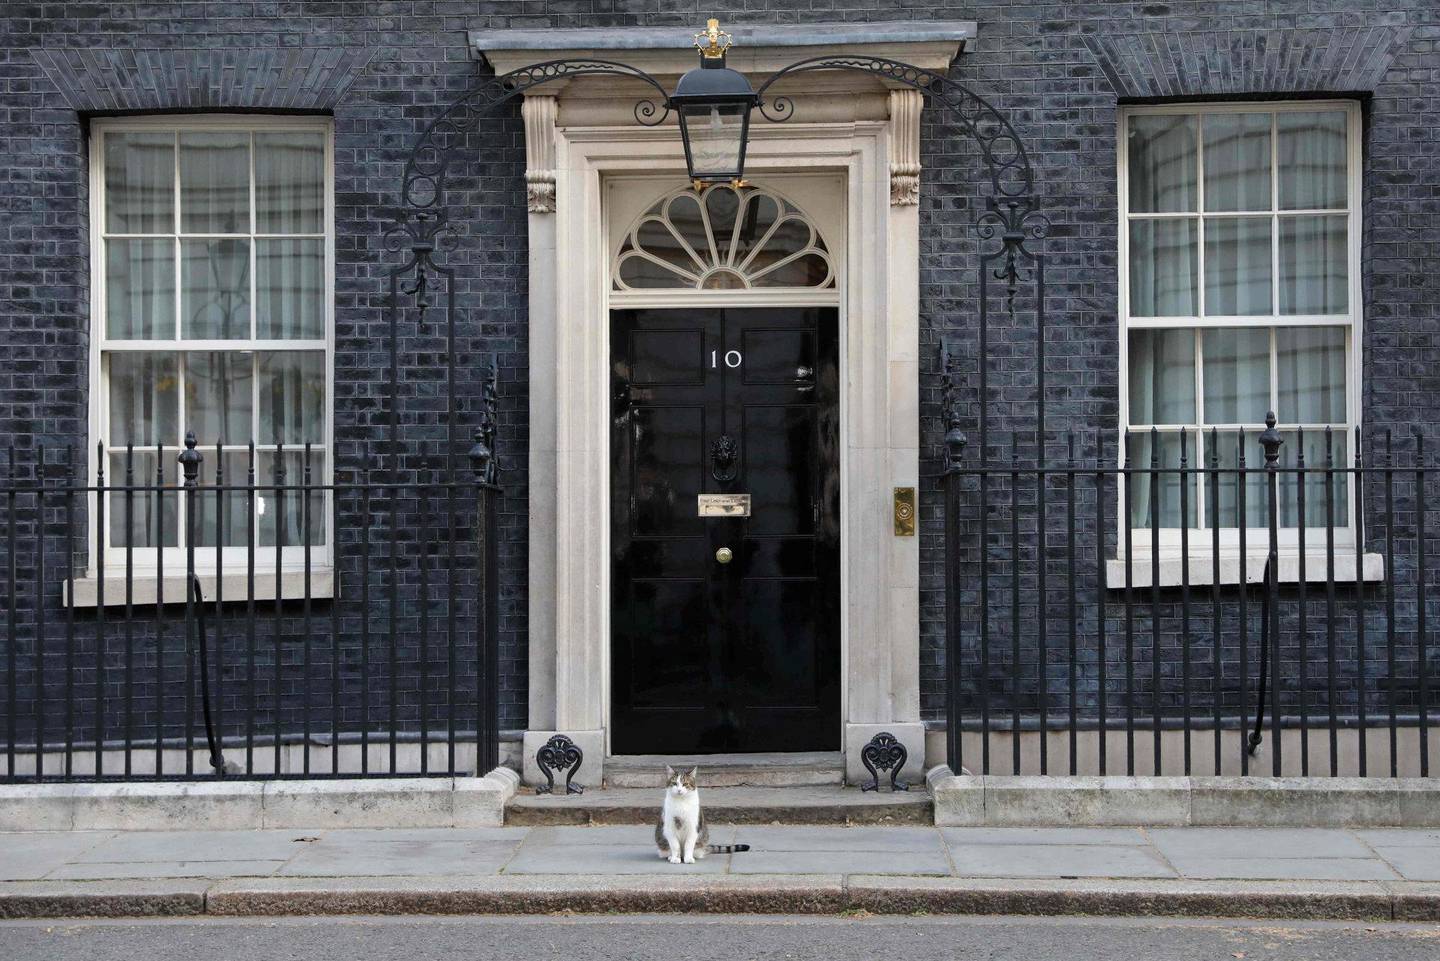 HUSKATT: Katten Larry bor i Downing Street 10, og har for øyeblikket selskap av Theresa May. Men om hun får gjennom sin brexitavtale, flytter hun ut. FOTO: ISABEL INFANTES/NTB SCANPIX